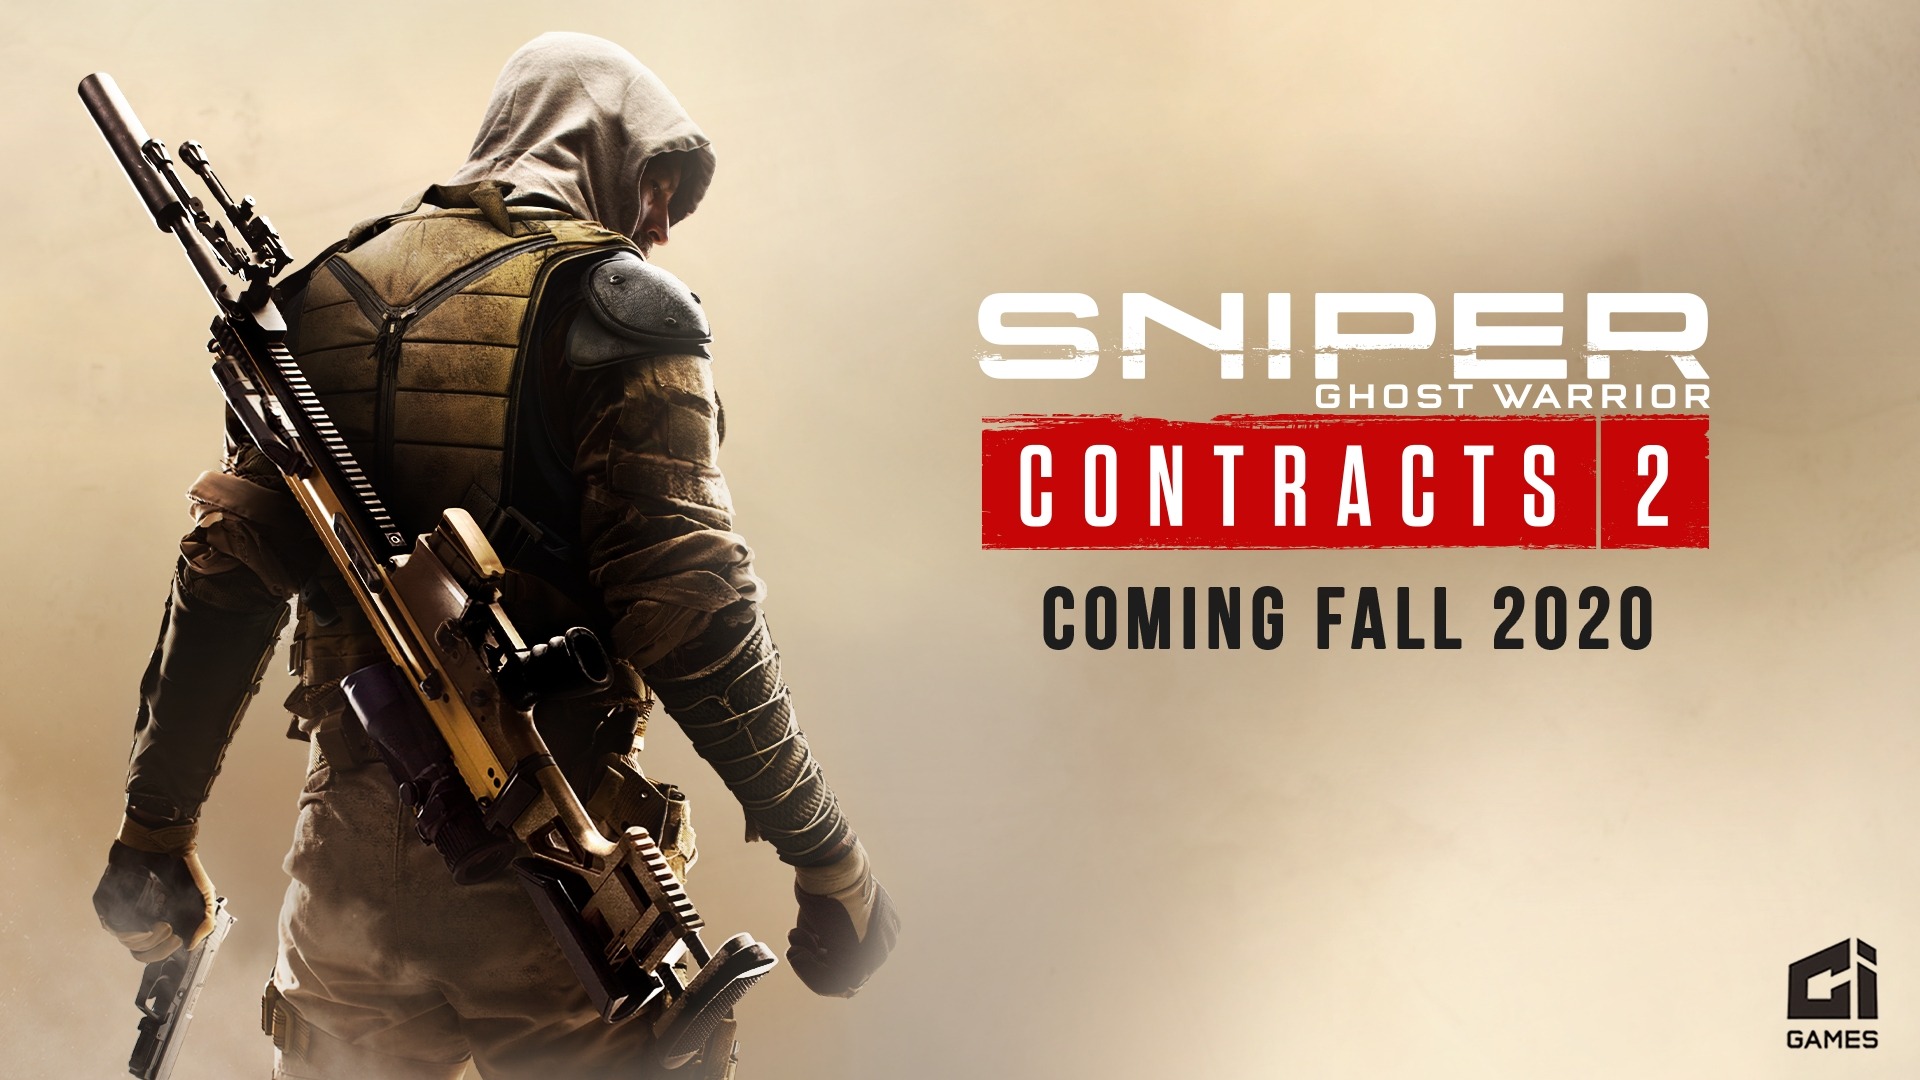 狙撃fps新シリーズ続編 Sniper Ghost Warrior Contracts 2 Pc Ps4 Xb1向けに海外で今秋発売 Game Spark 国内 海外ゲーム情報サイト